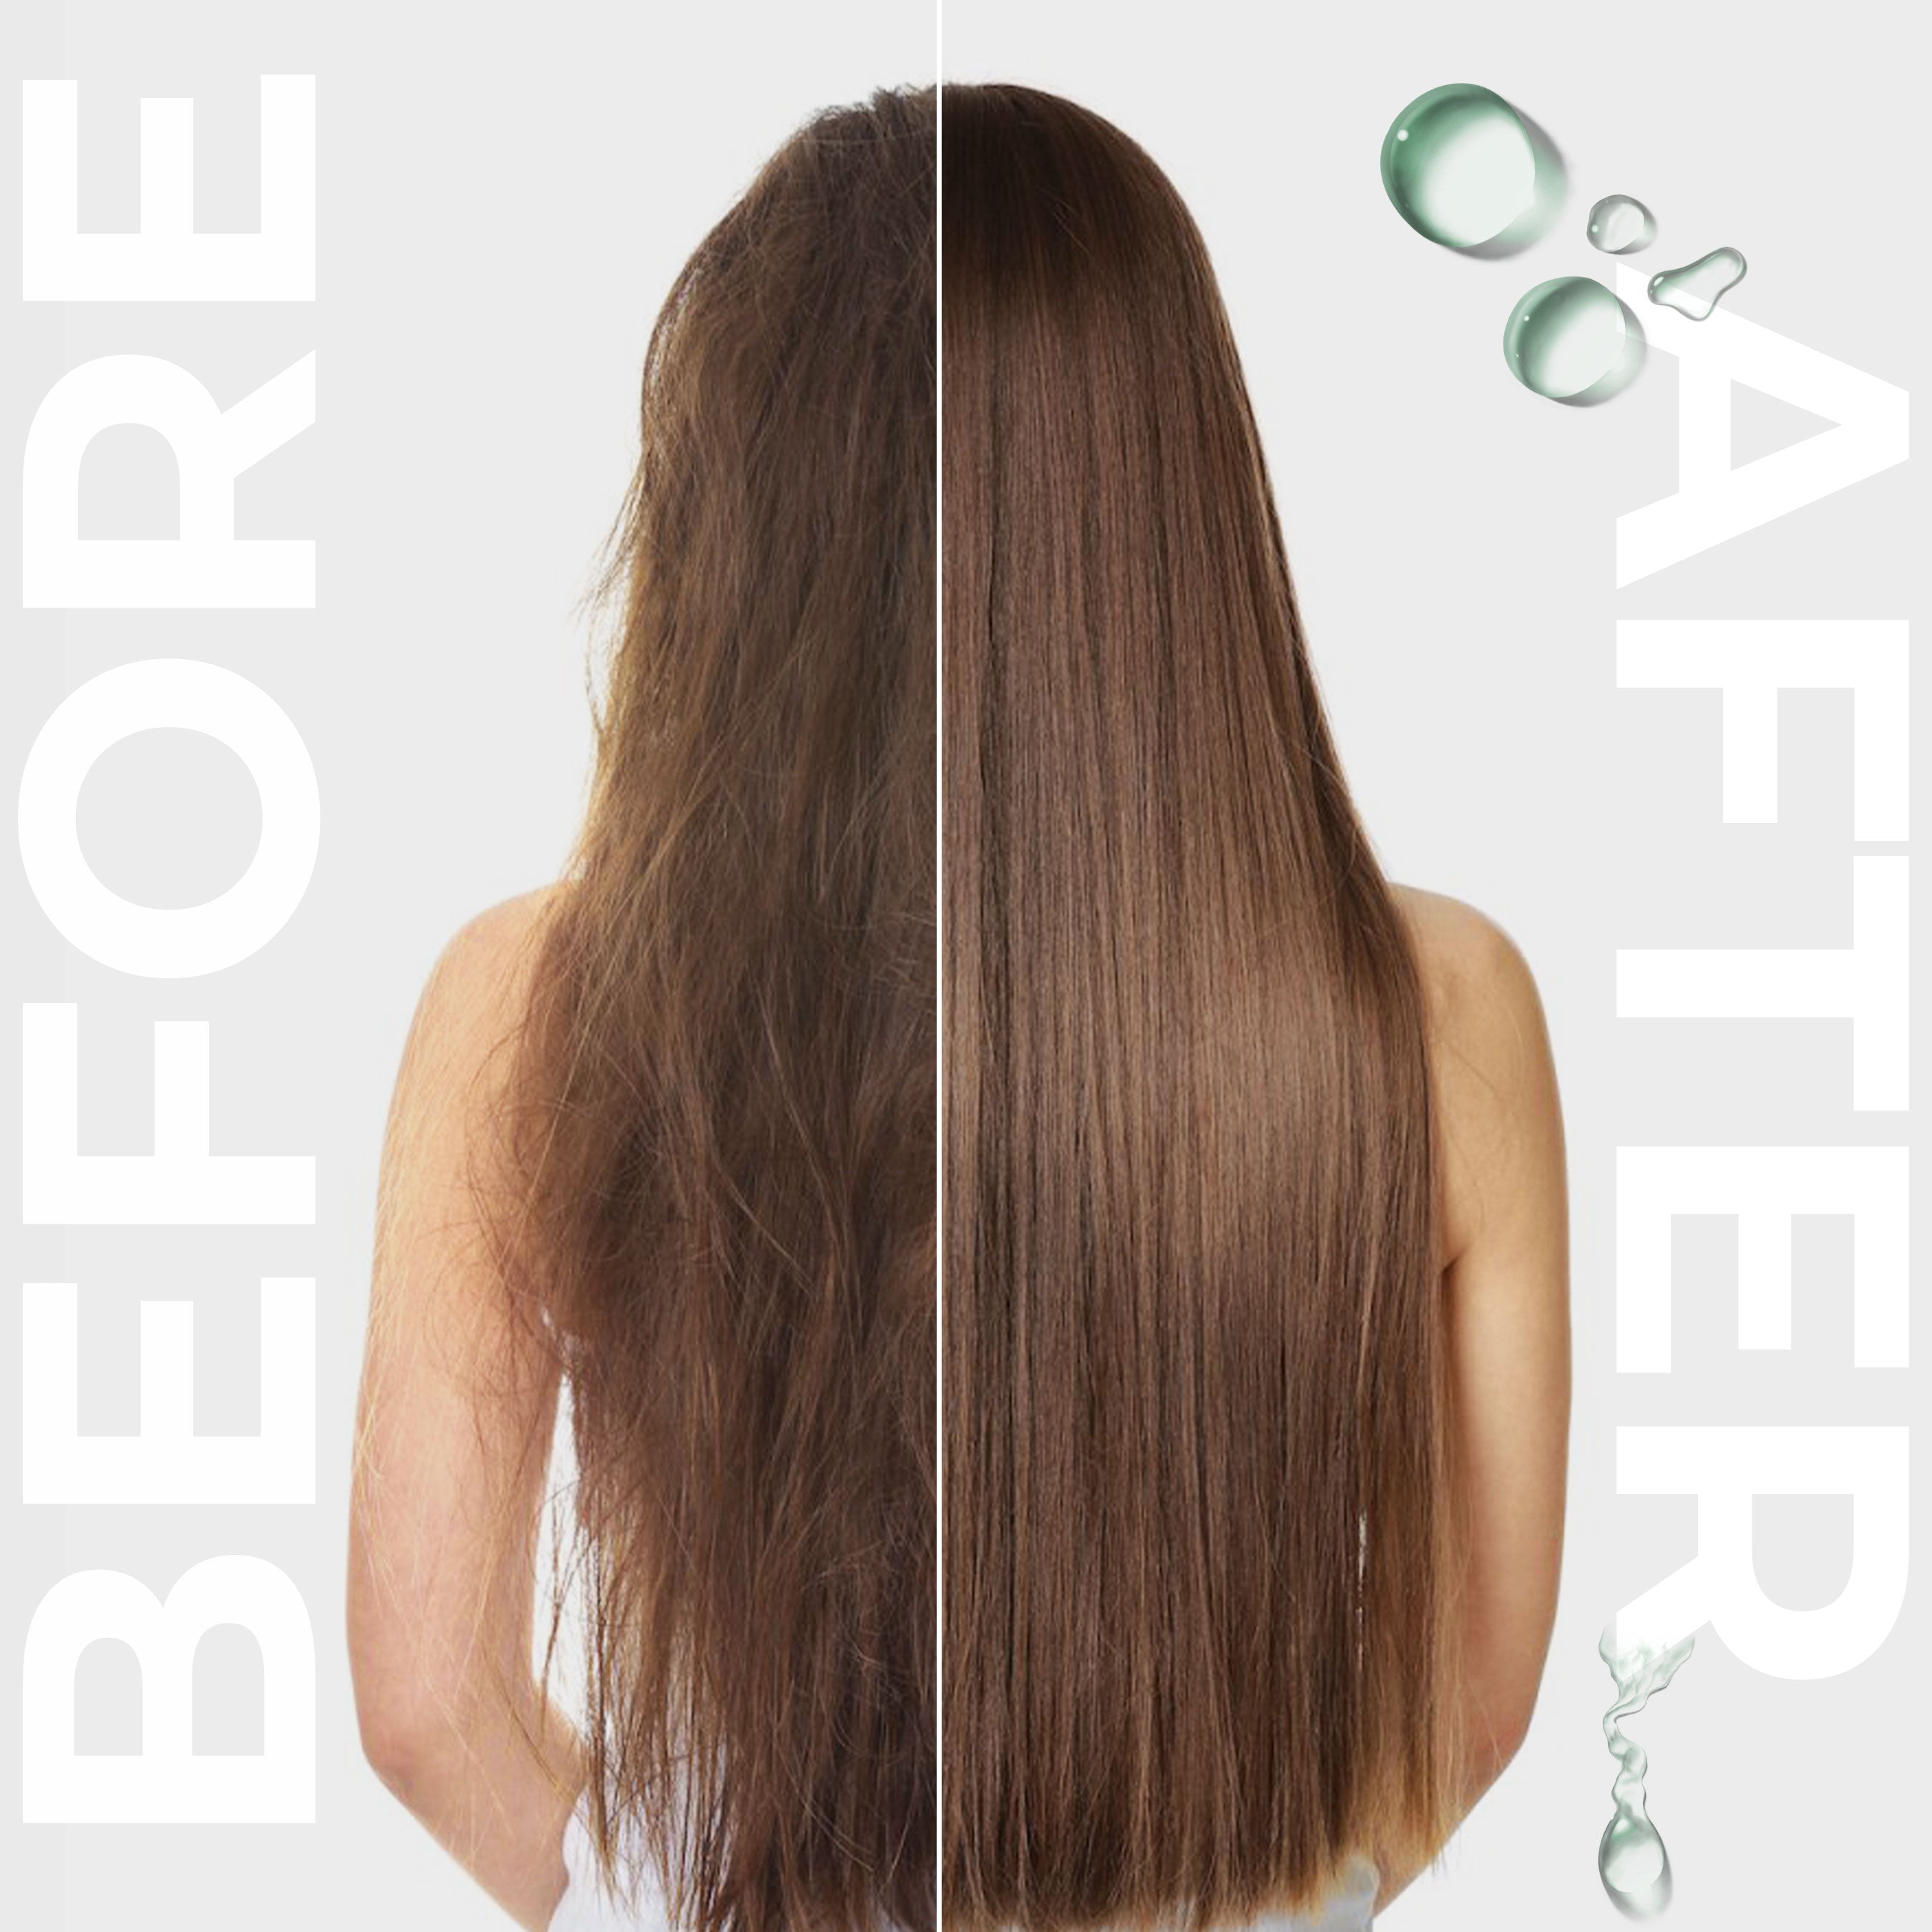 Rosemary Hair Oil Treatment I Vegan Pre-Shampoo Scalp Oil Treatment for Hair I Pre Wash Hair Oil & Hair Growth Serum I Healing oil treatment for Hair Loss, Split Ends, Thinning & Dry Hair